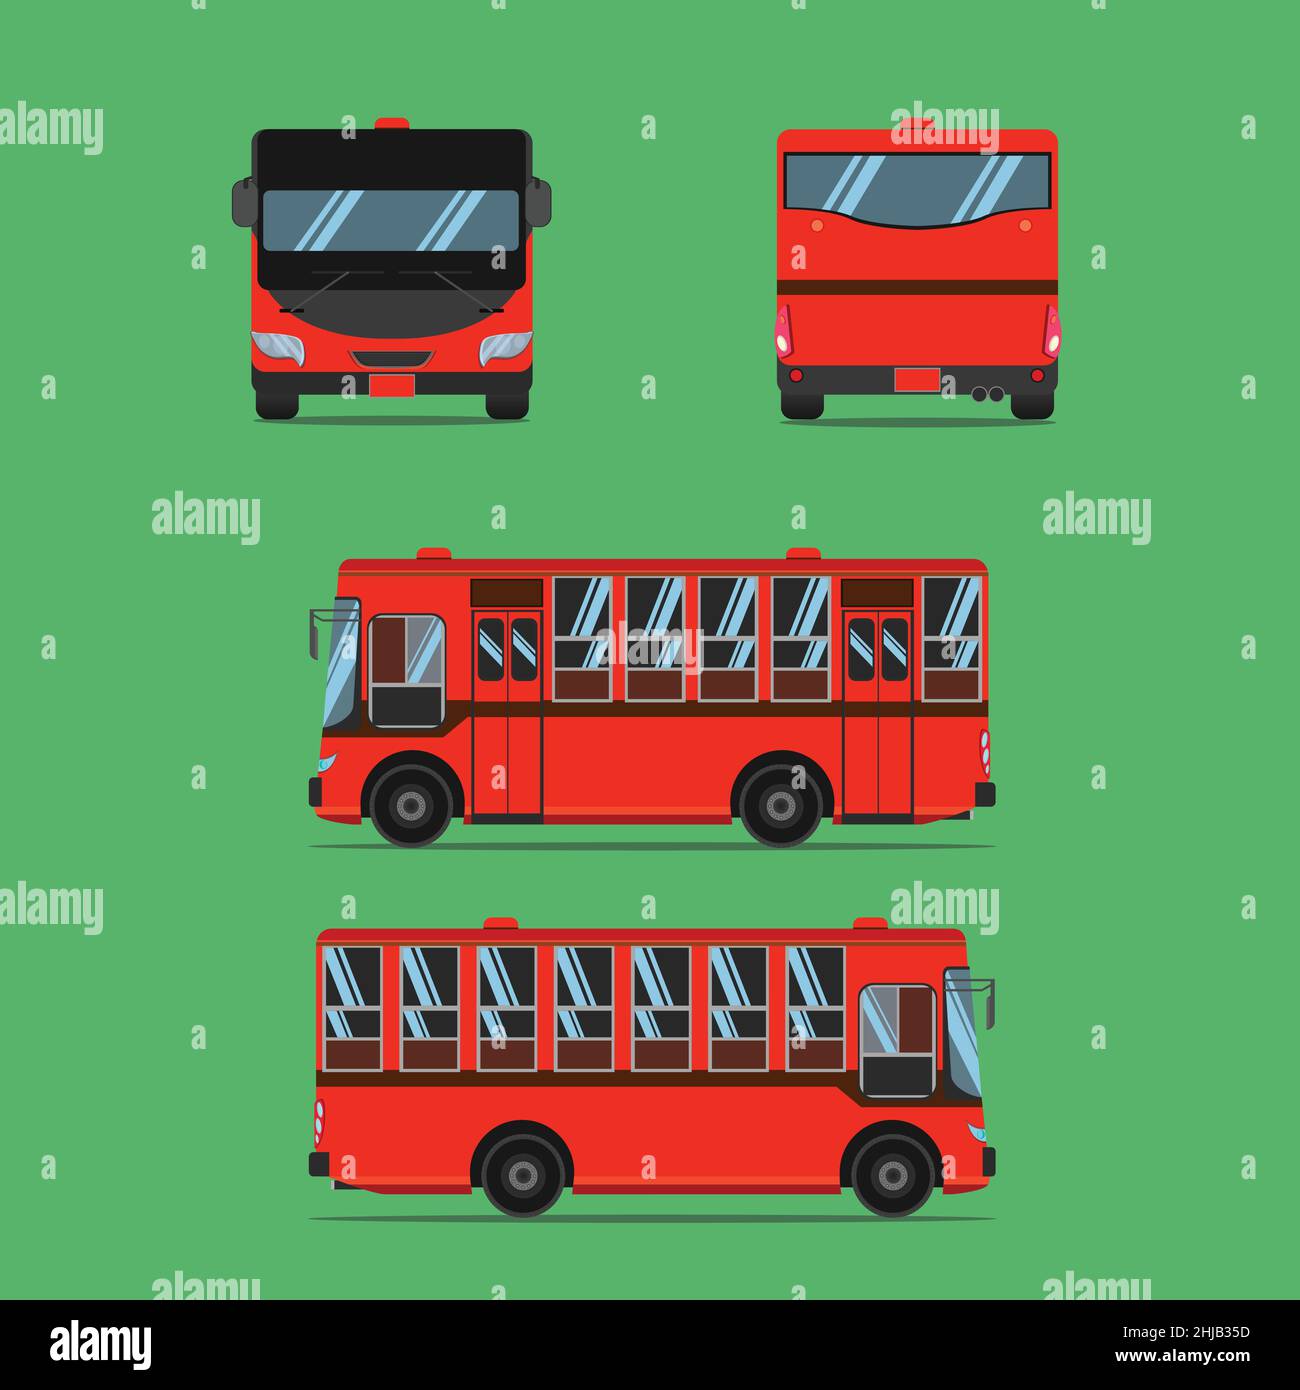 Thailändischer bus Stock-Vektorgrafiken kaufen - Alamy